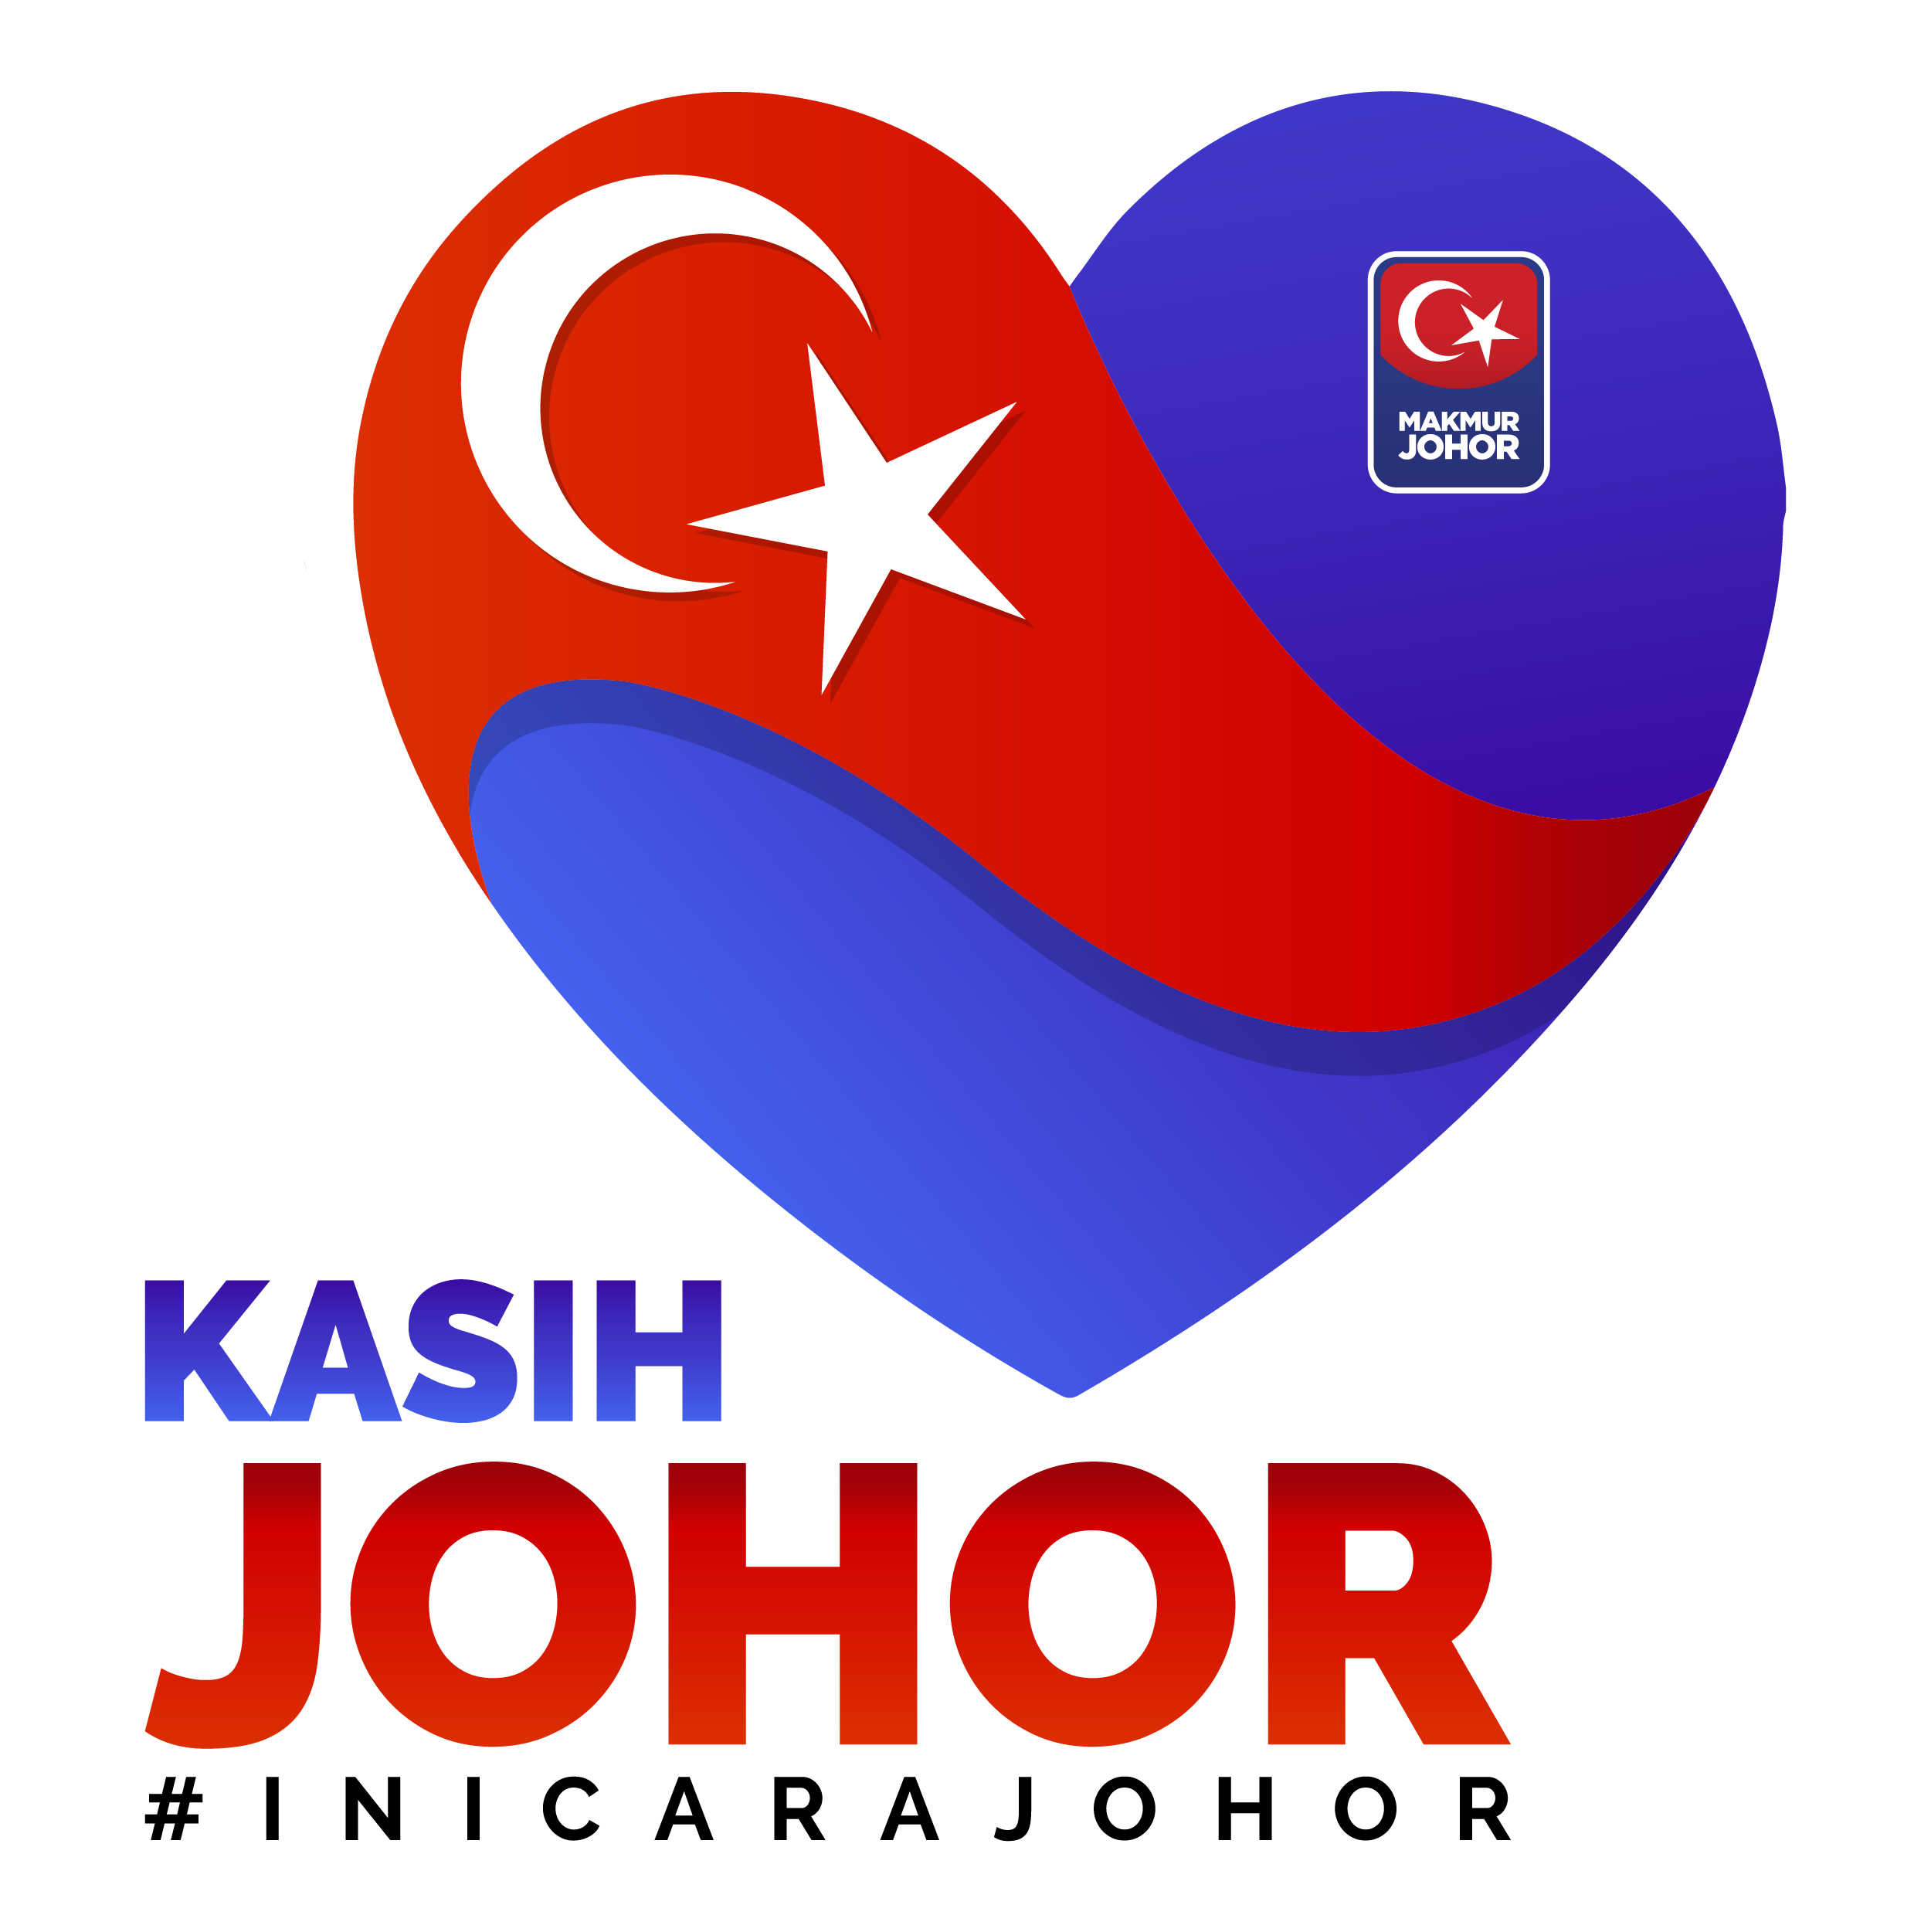 Johor bantuan my kasih